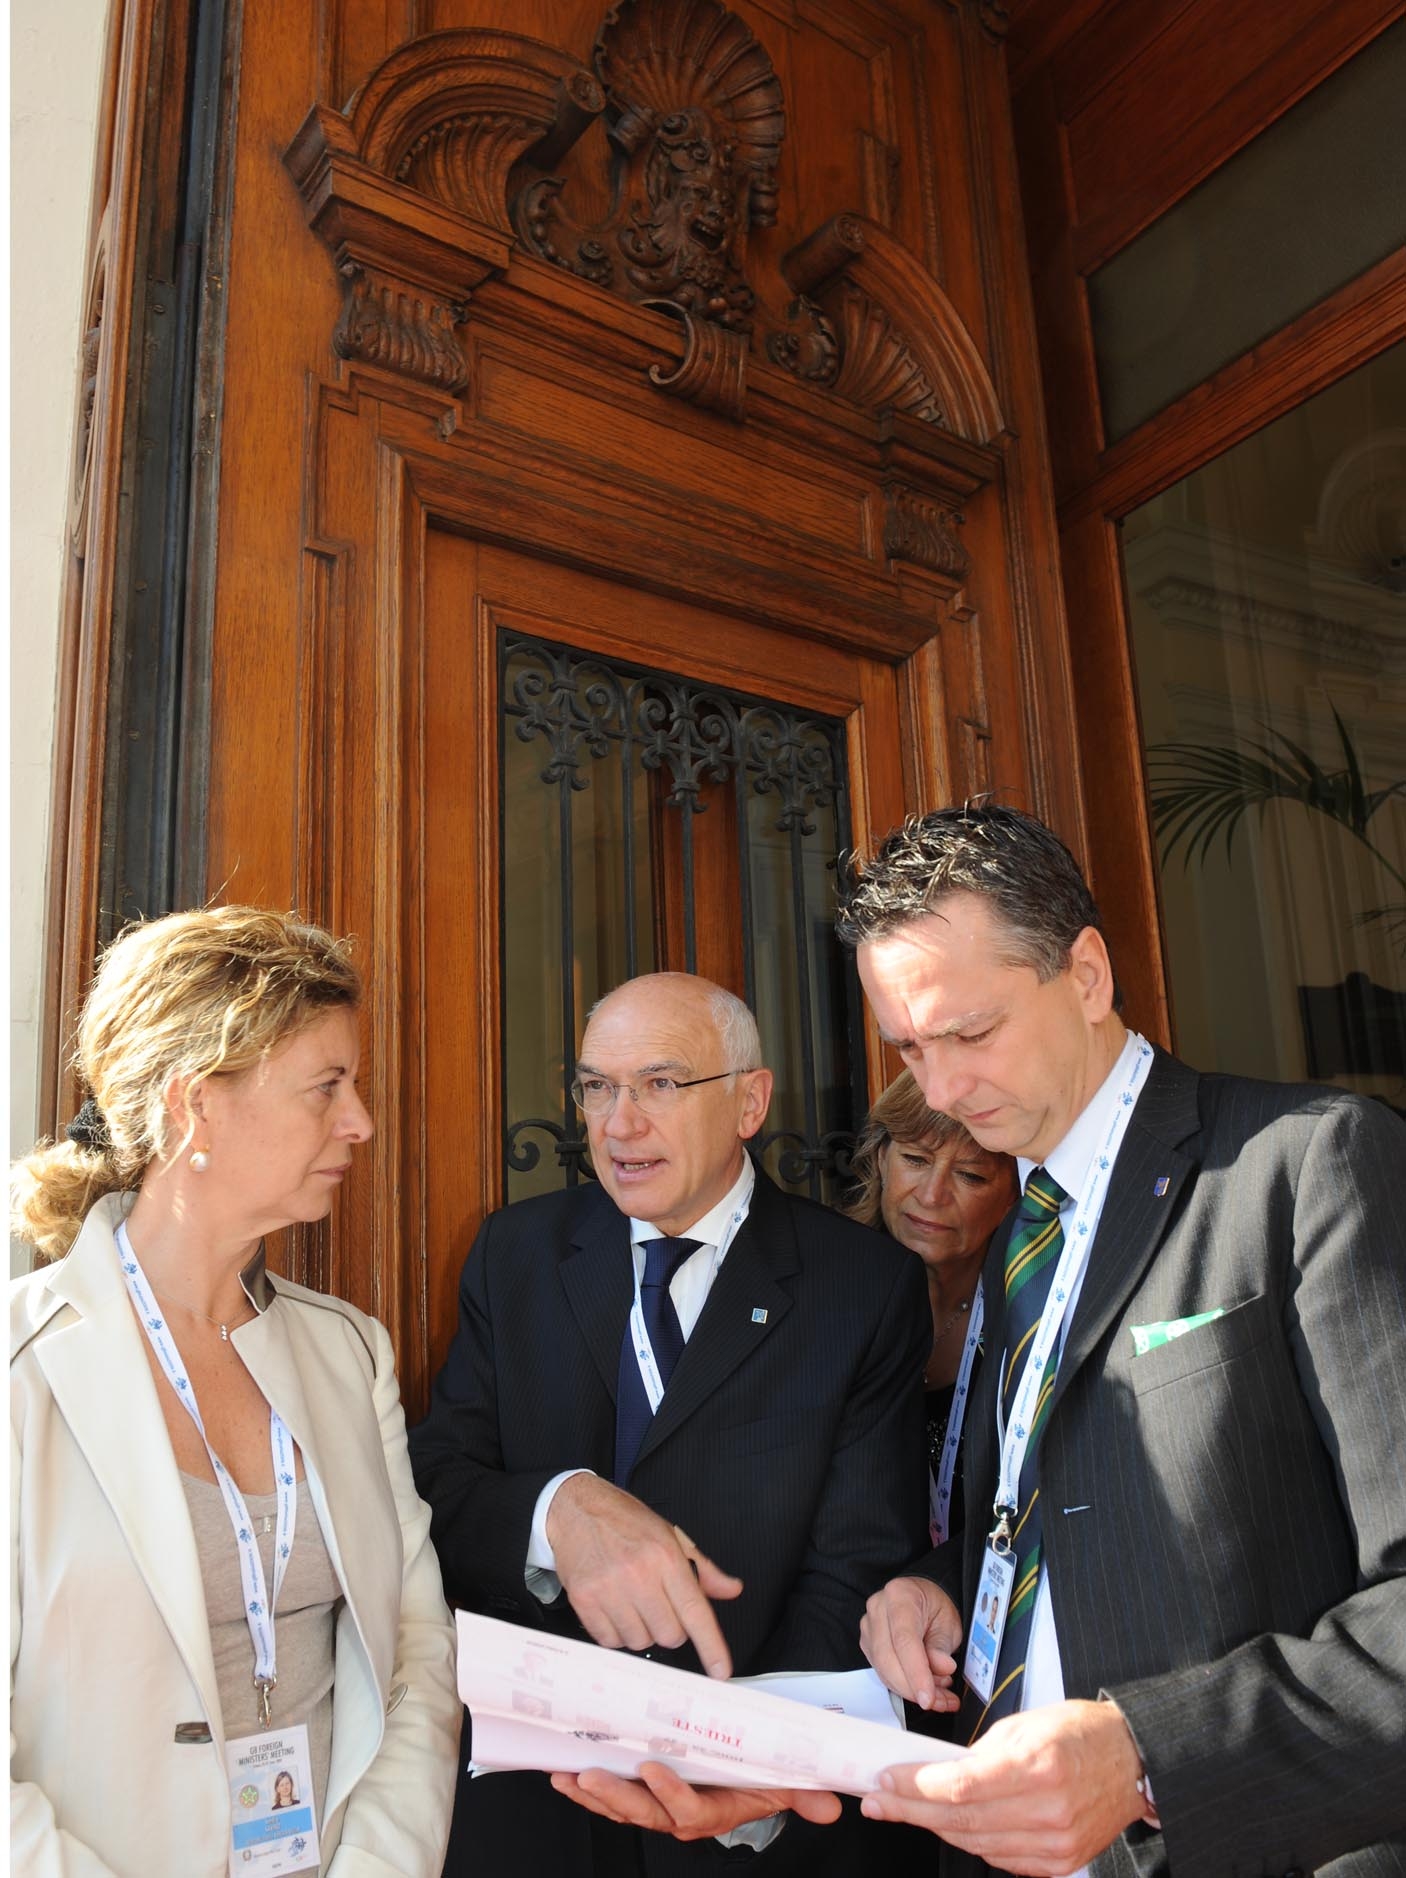 Edouard Ballaman (Presidente Consiglio regionale) e Sandra Savino (Assessore regionale alle Risorse economiche e finanziarie) durante il G8 a Trieste. (Trieste, 26/06/09)